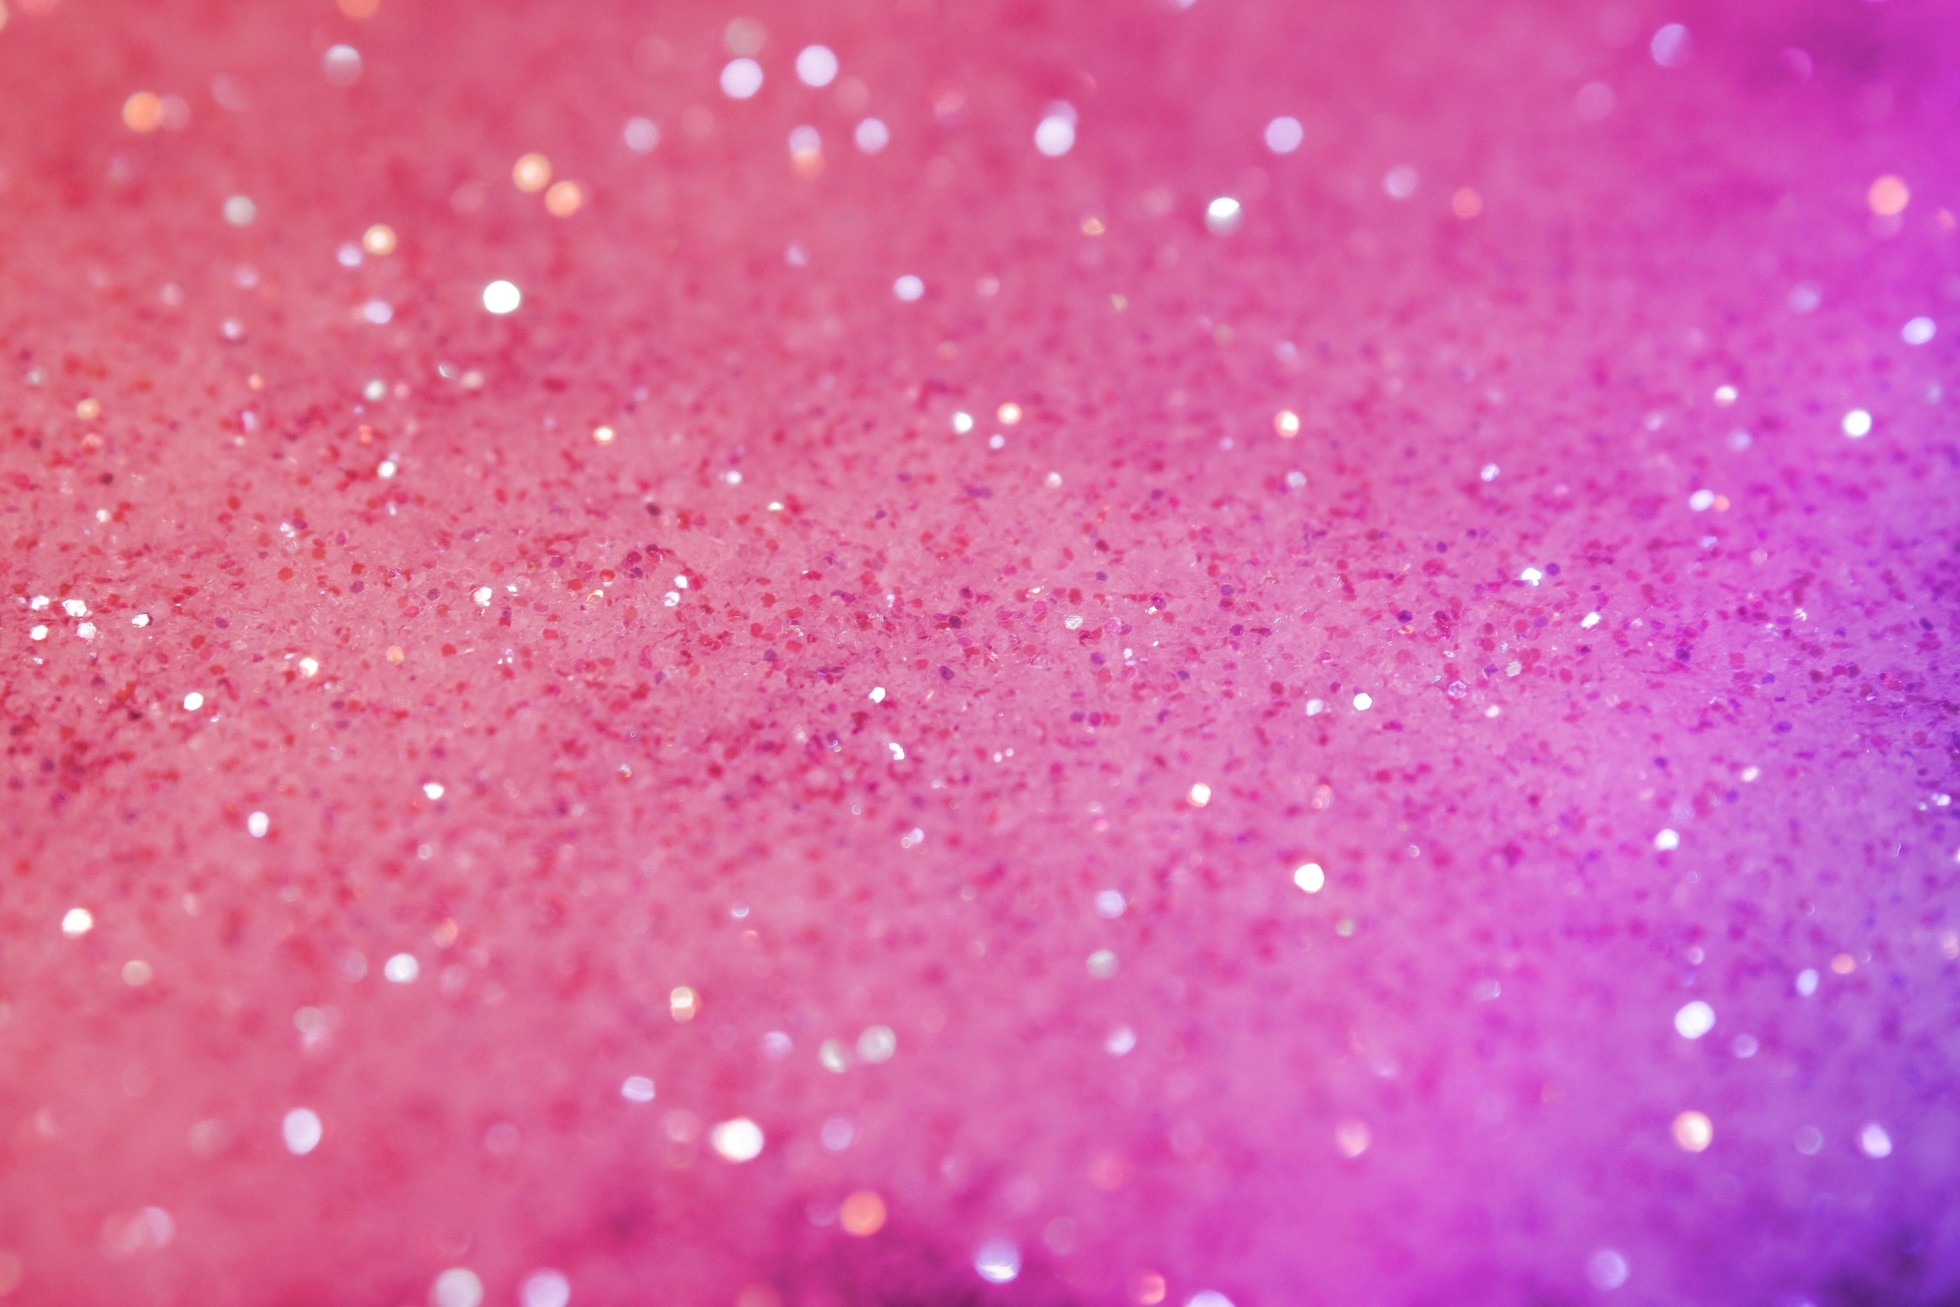 1960x1307 Pink Desktop | Pink Glitter Desktop Backgrounds - HD Wallpapers